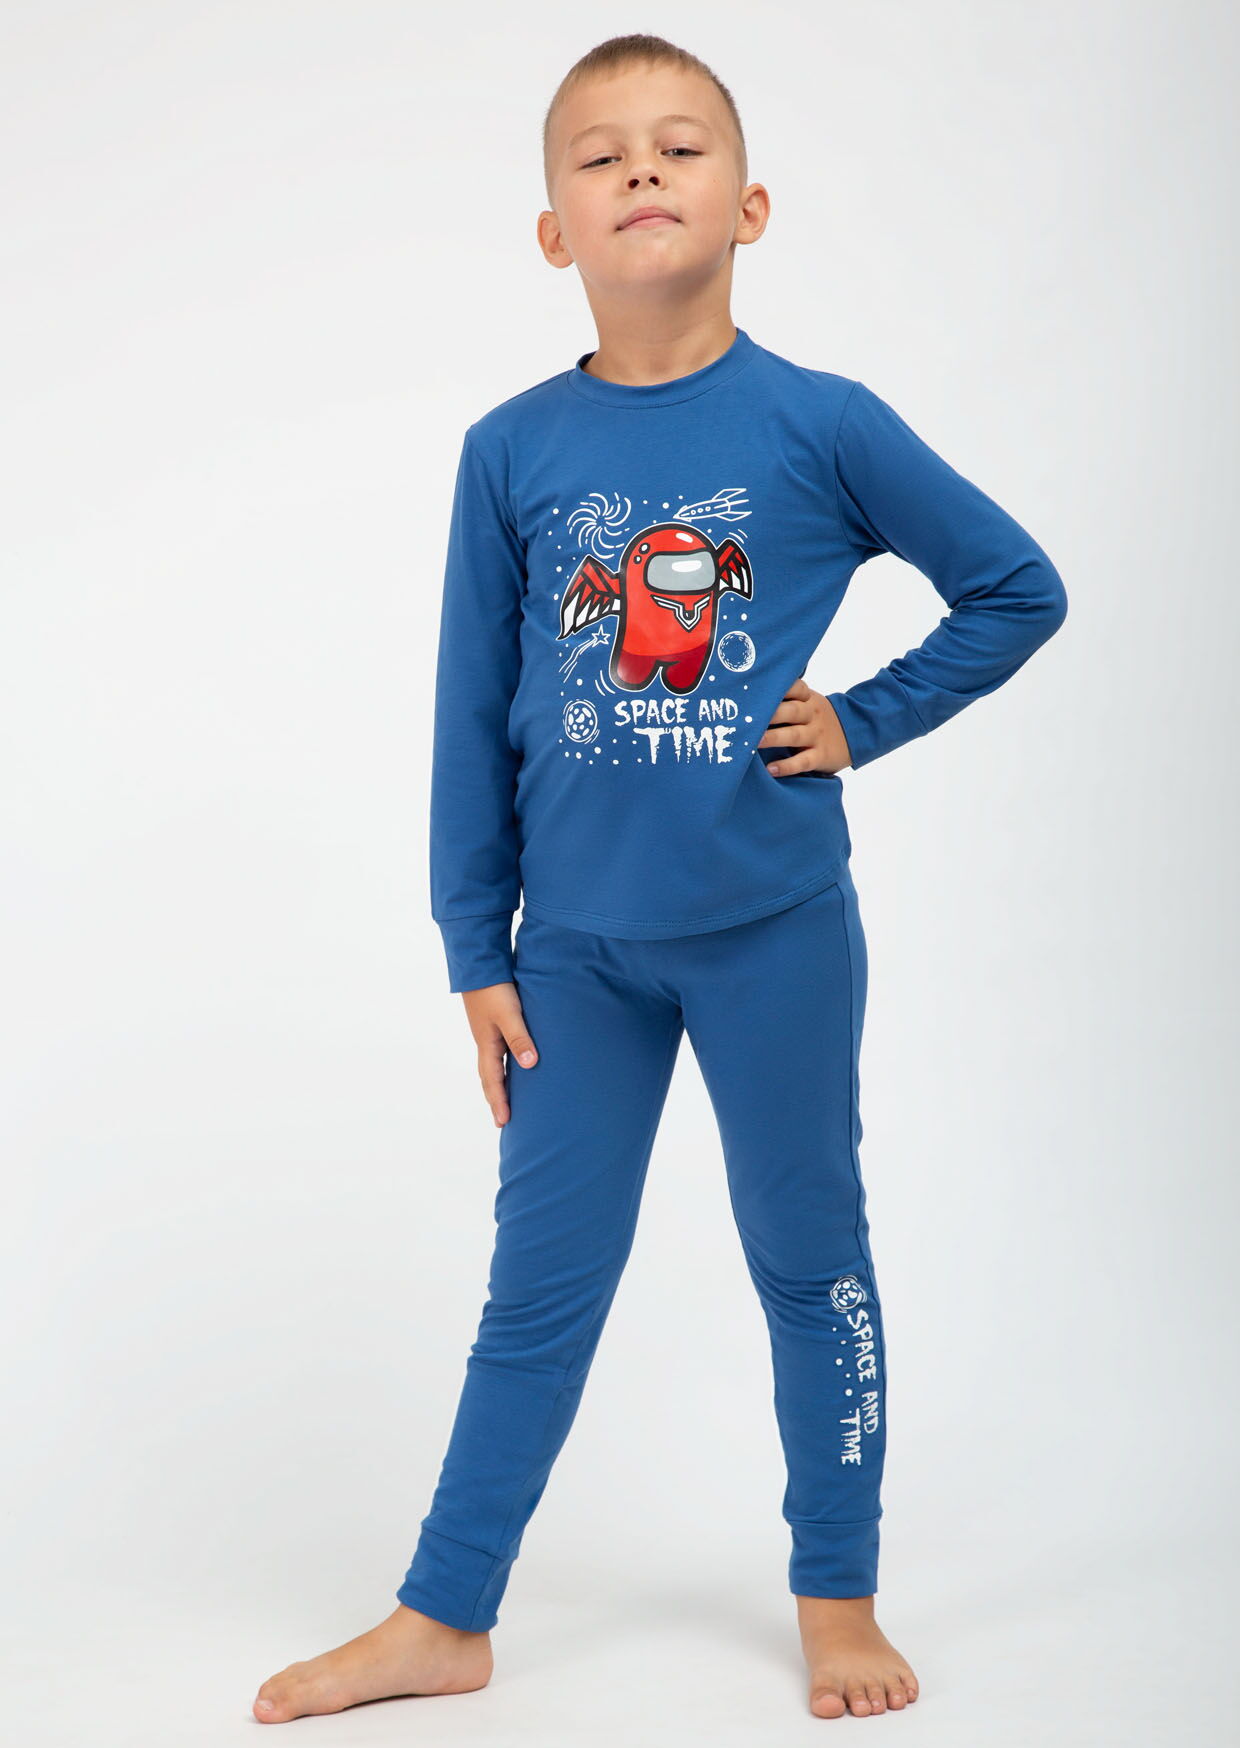 Пижама для мальчика Roksana space синяя 16198 - цена